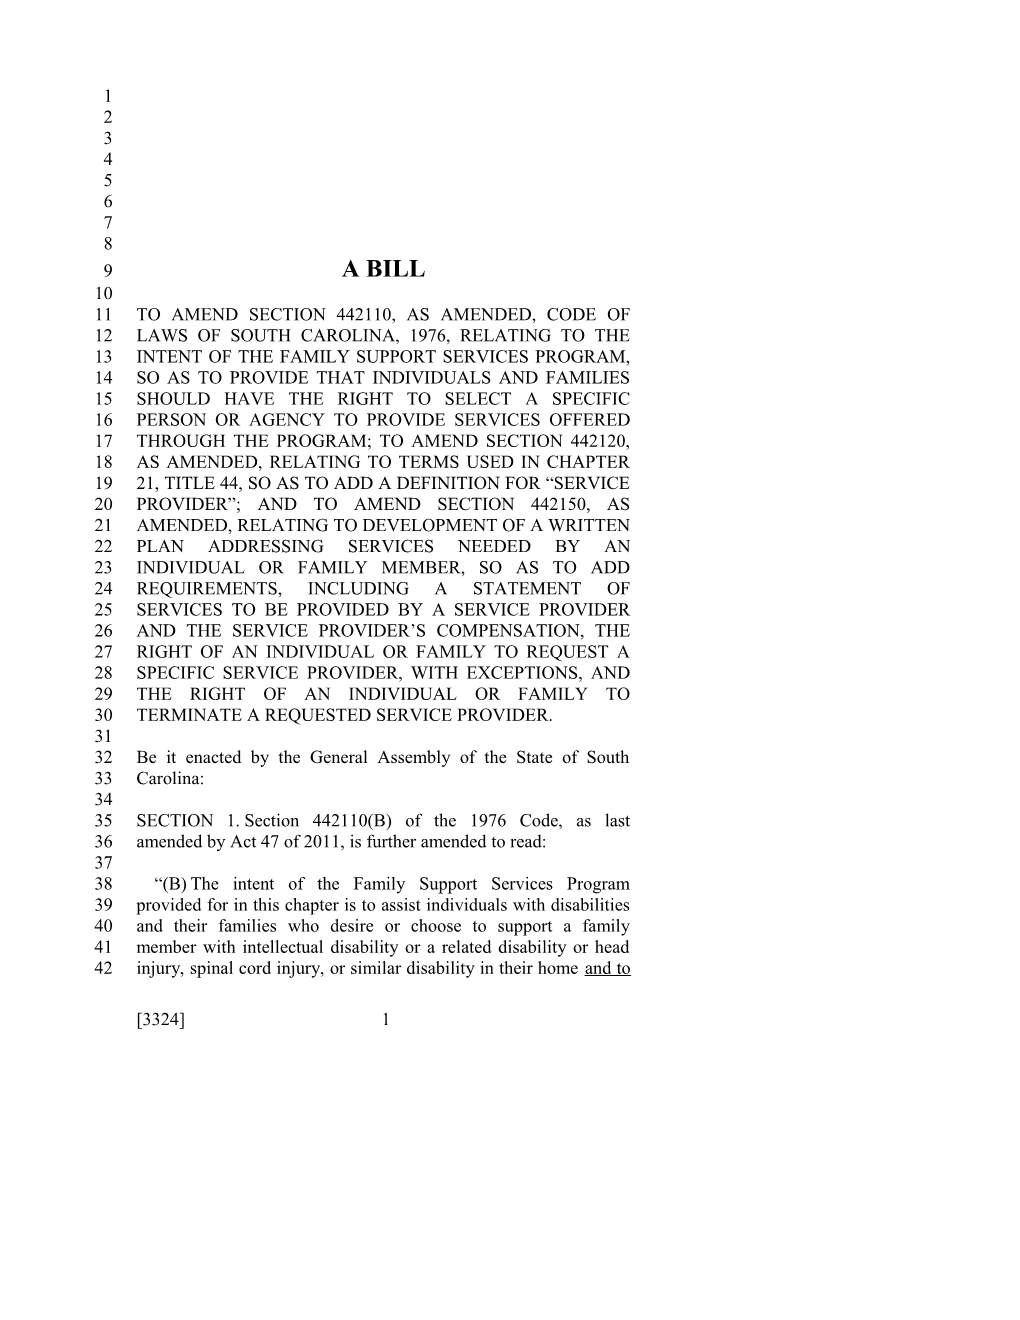 2017-2018 Bill 3324 Text of Previous Version (Dec. 15, 2016) - South Carolina Legislature Online